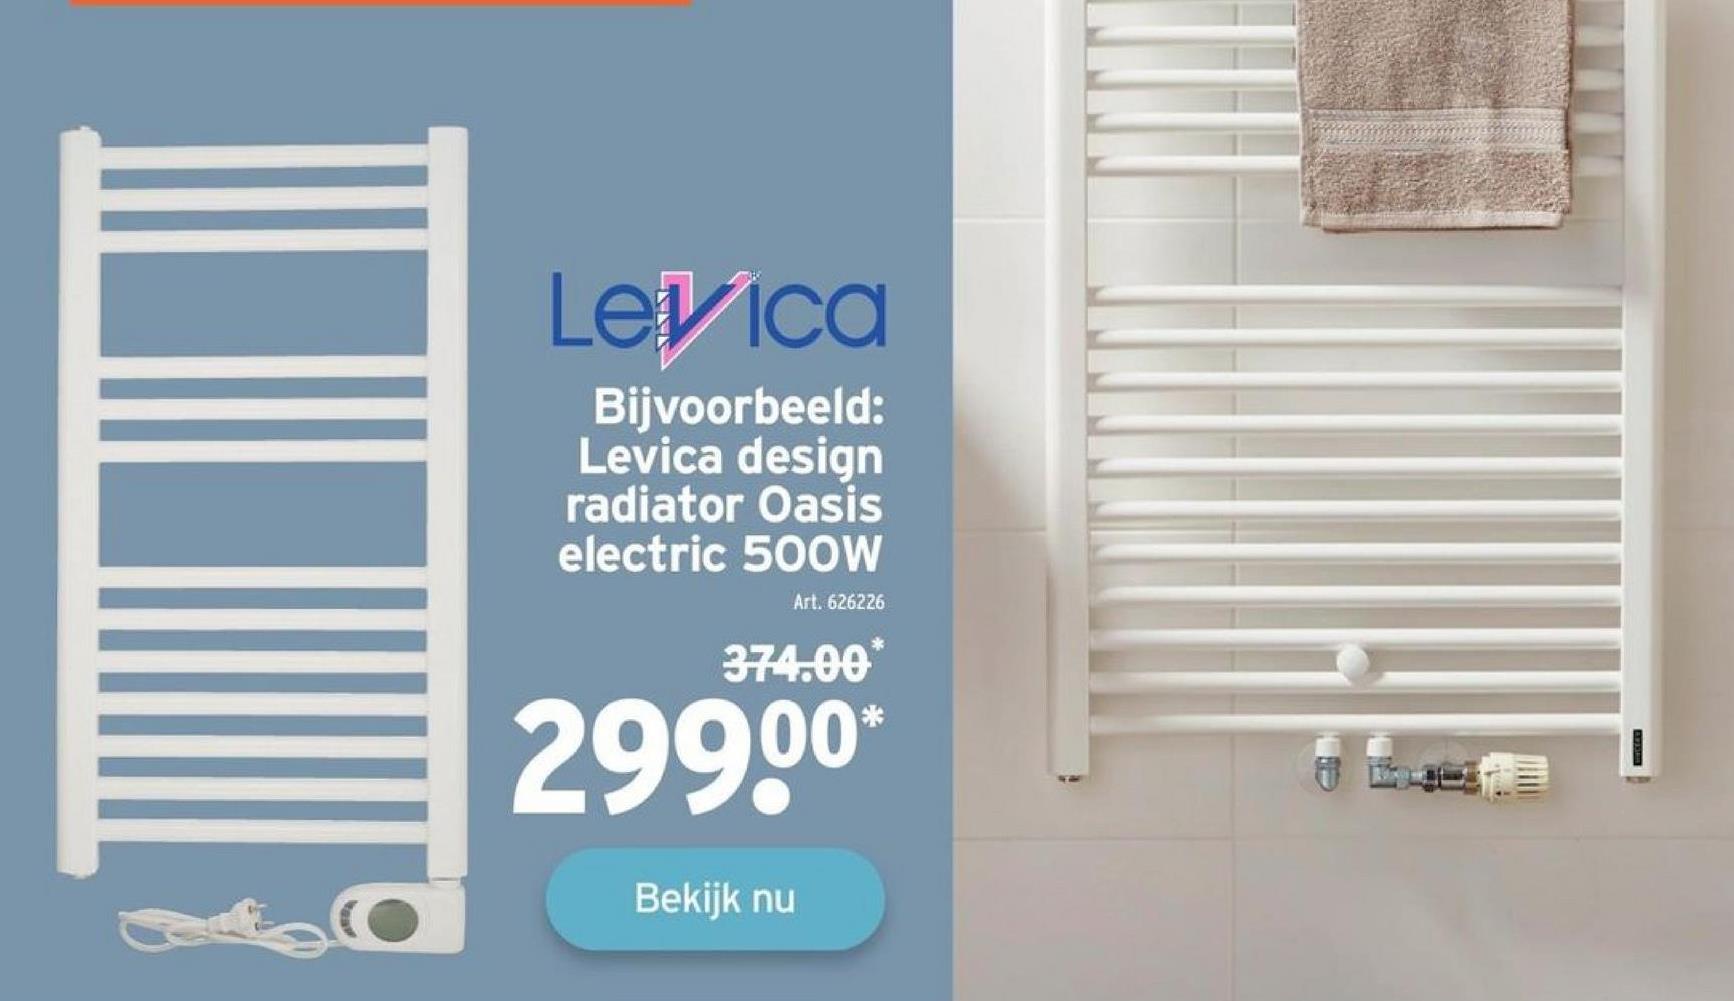 Levica
Bijvoorbeeld:
Levica design
radiator Oasis
electric 50OW
Art. 626226
374.00
299.⁰⁰*
Bekijk nu